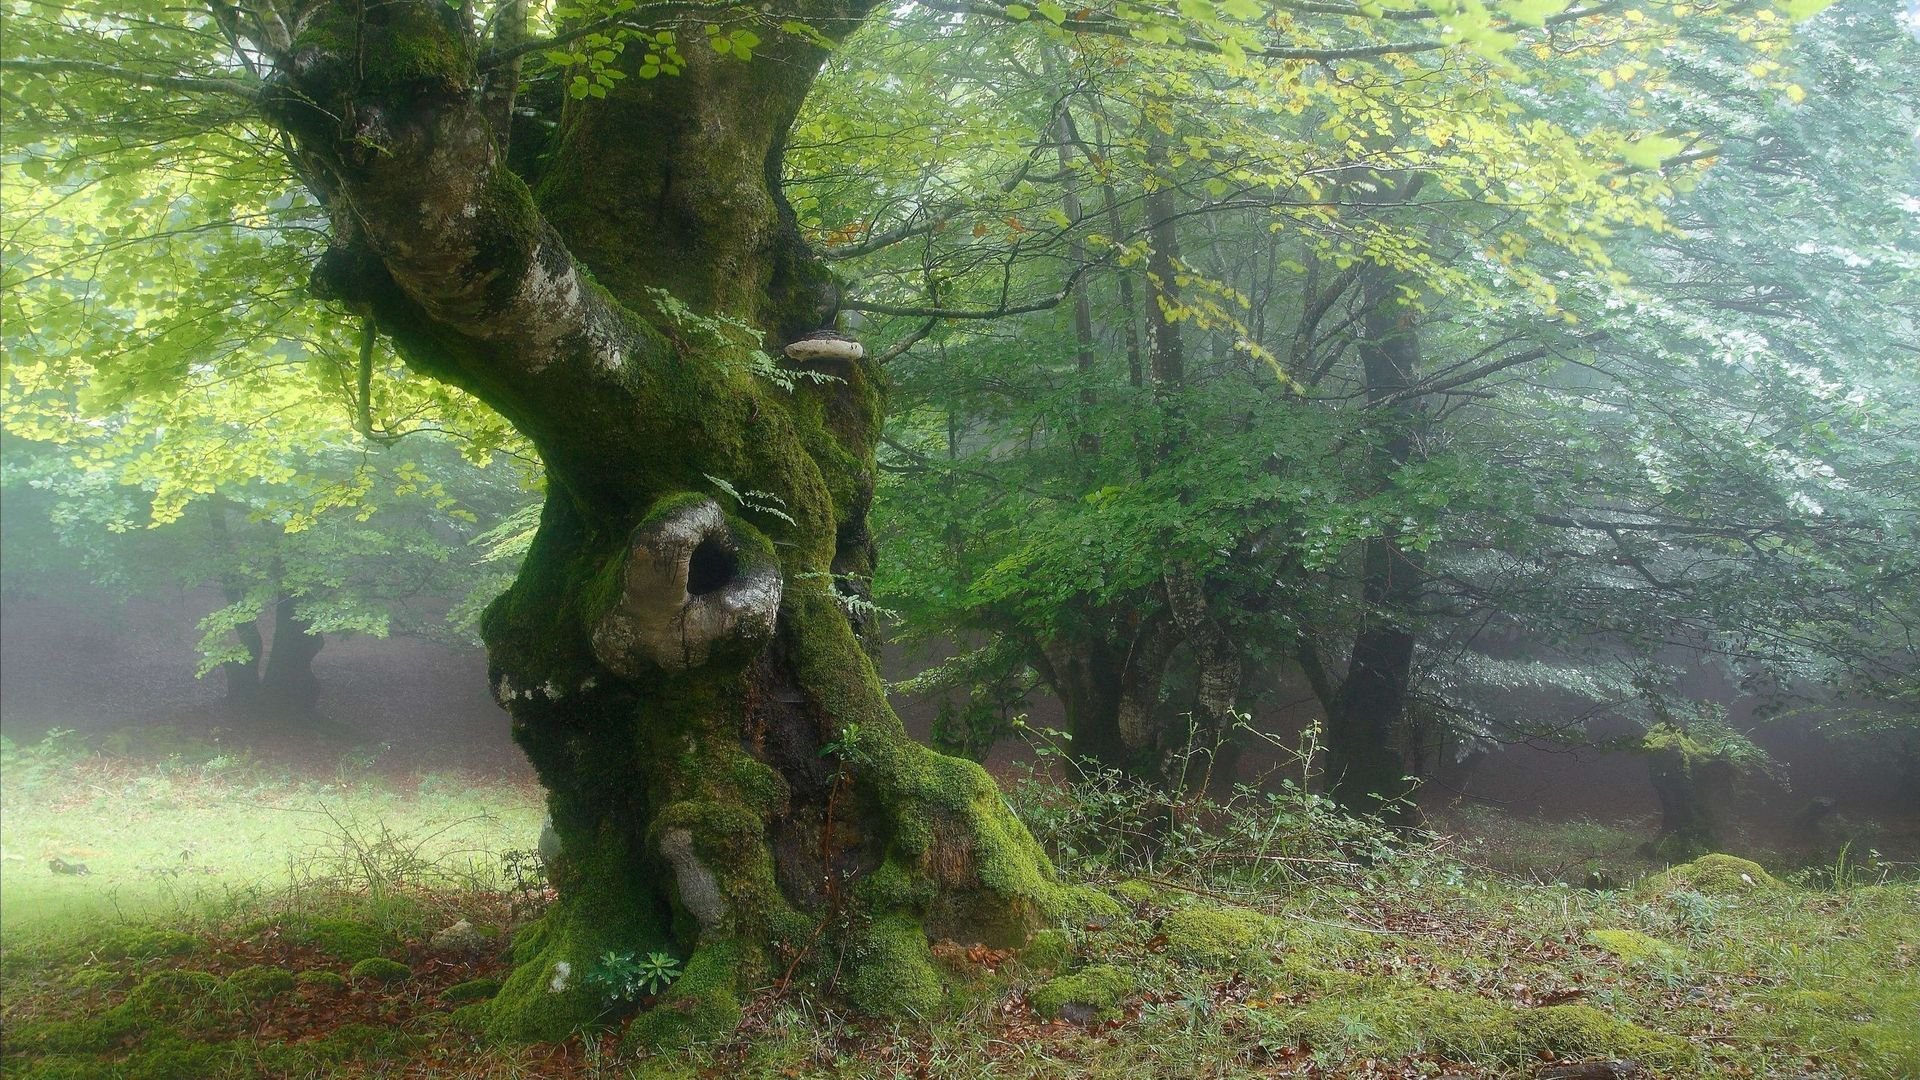 Шервудский лес в Англии. Лесная опушка дремучего леса. Bosco delle Querce (дубовый лес). Беловежская пуща деревья. Забрались в чащу